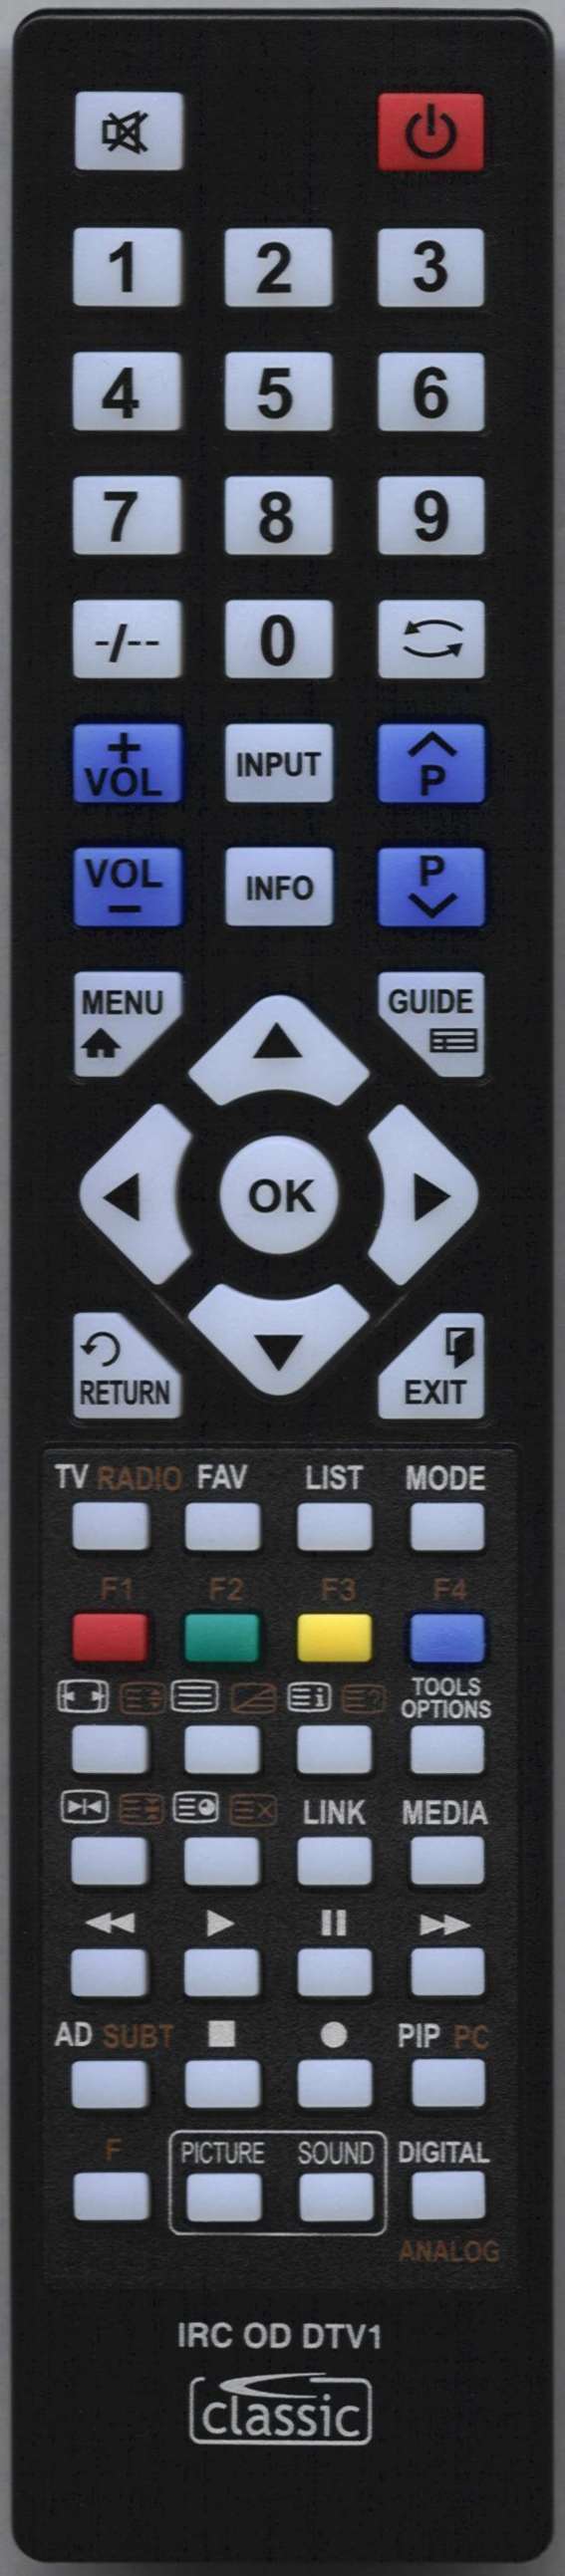 LG 43UD79-B.AEN Remote Control Alternative 